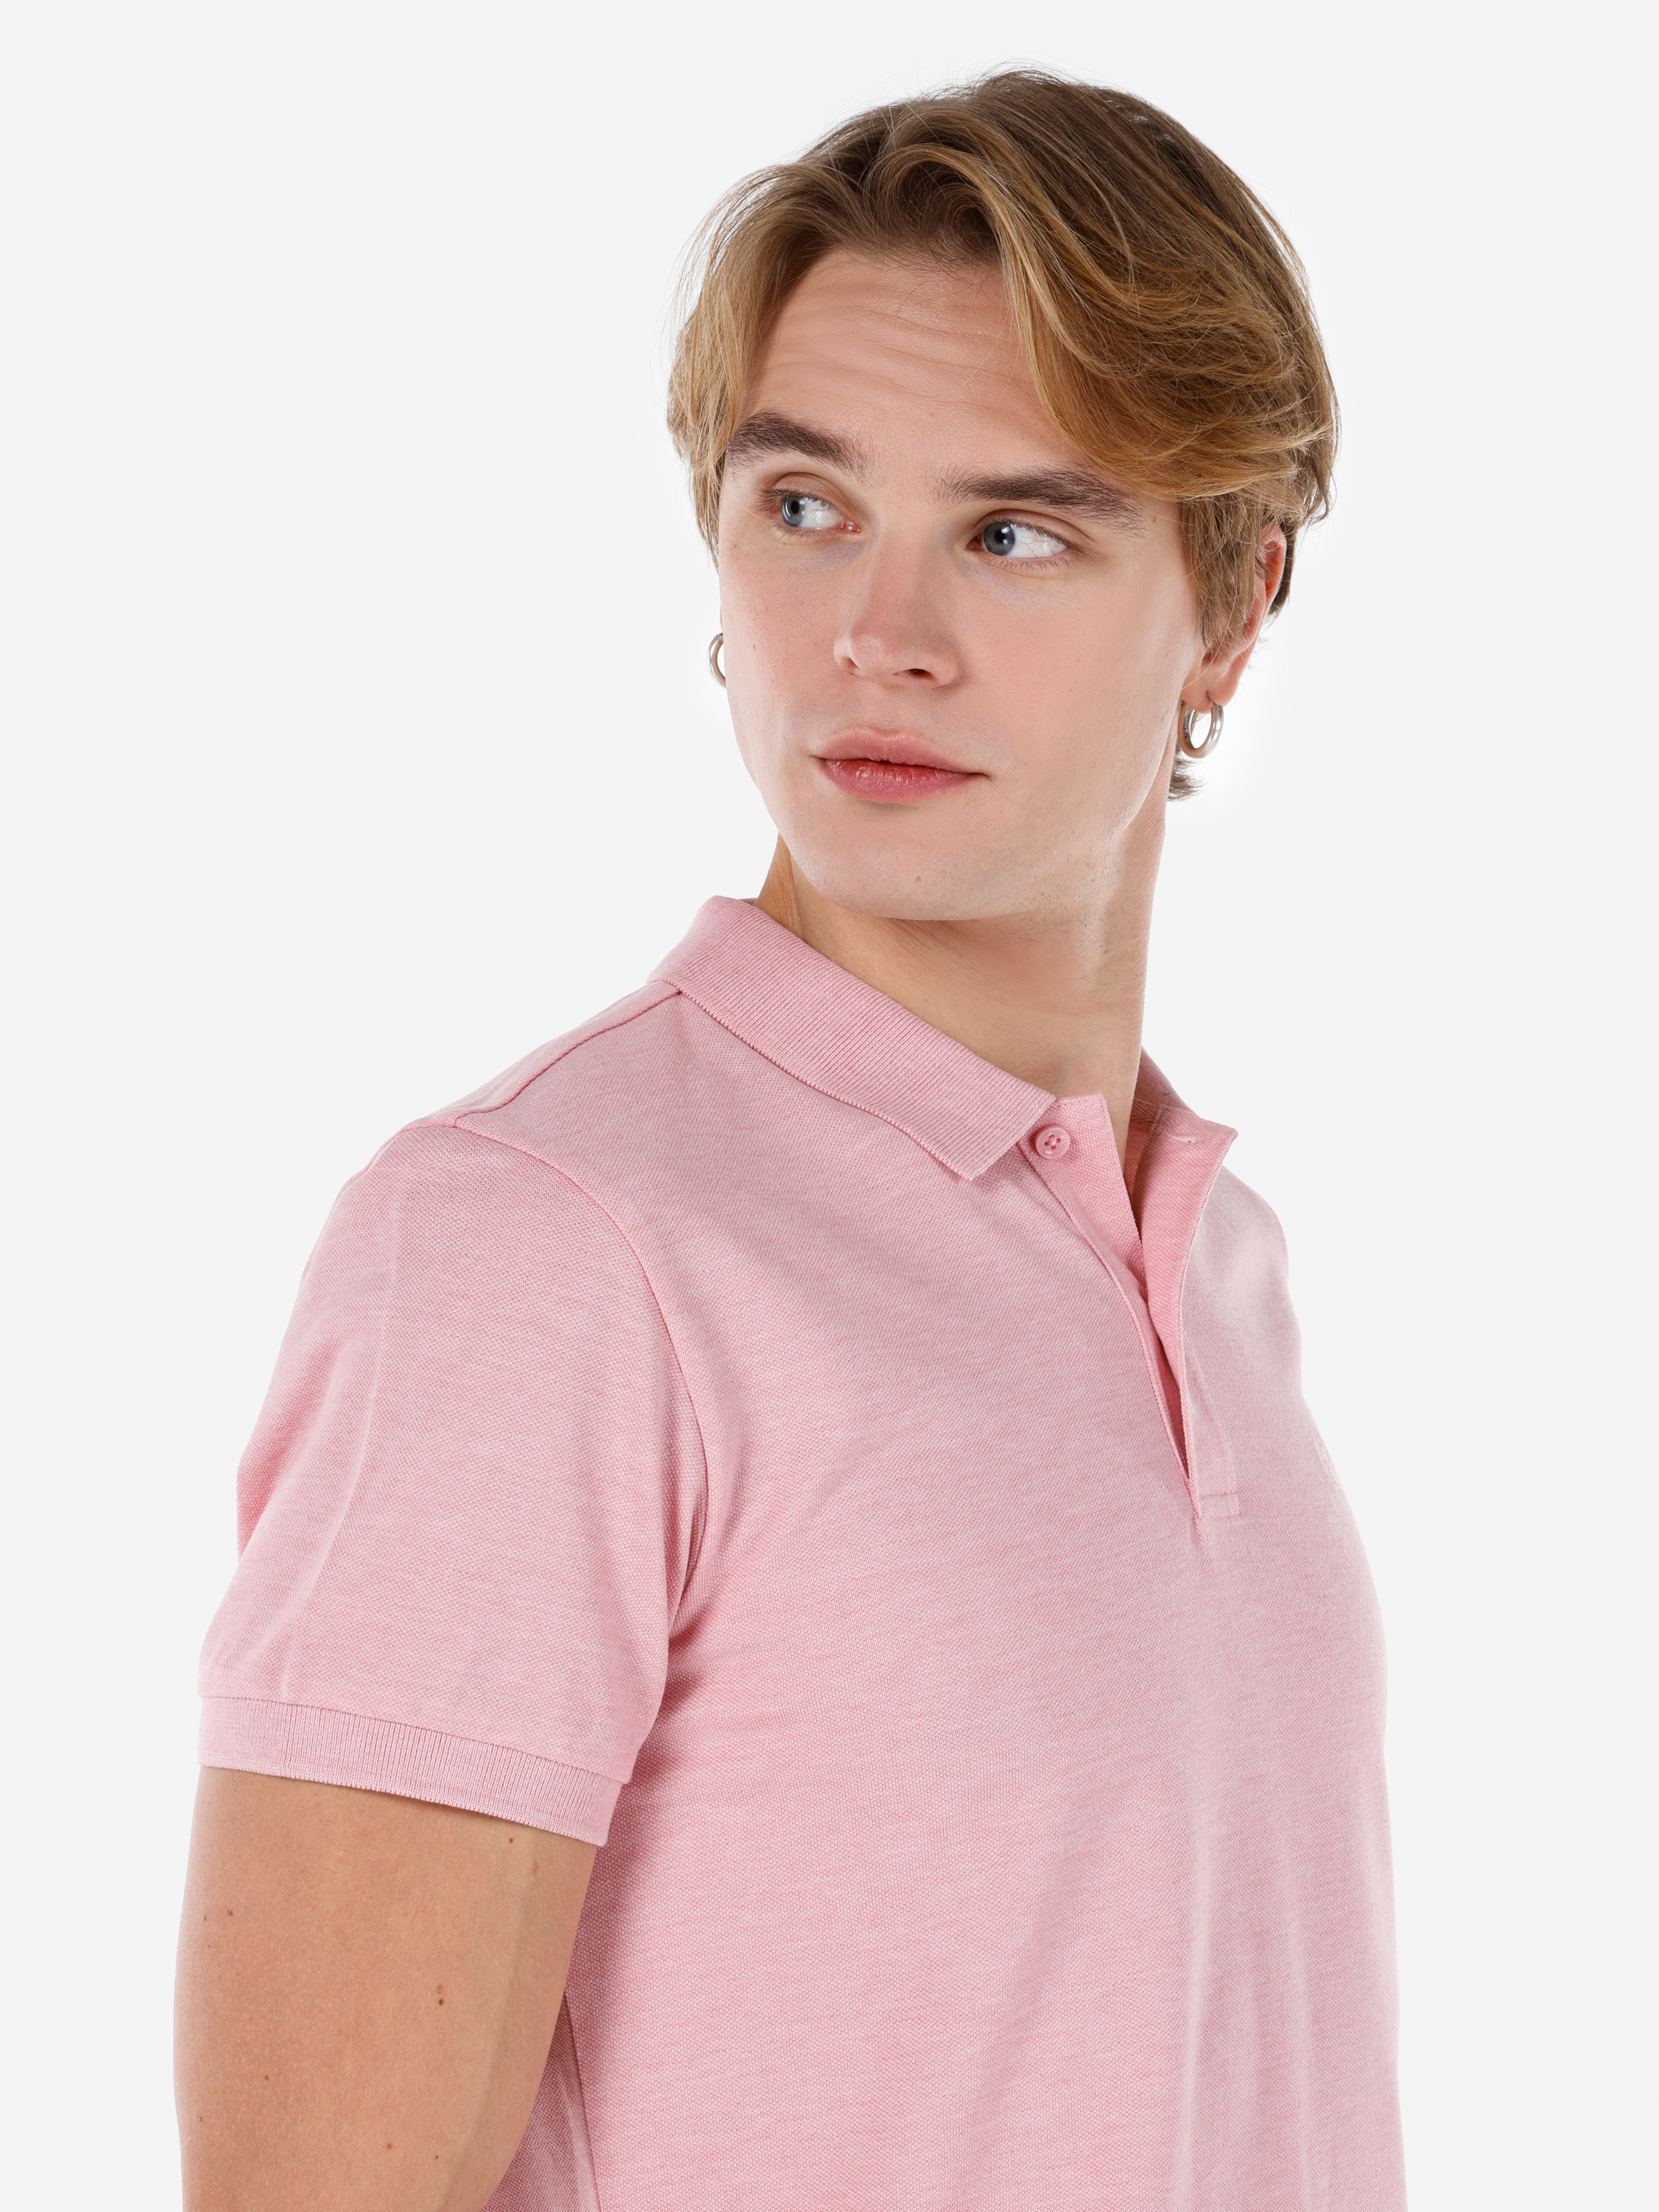 اعرض التفاصيل لـ قميص بولو ذو ياقة عادية مناسب للرجال باللون الوردي وأكمام قصيرة